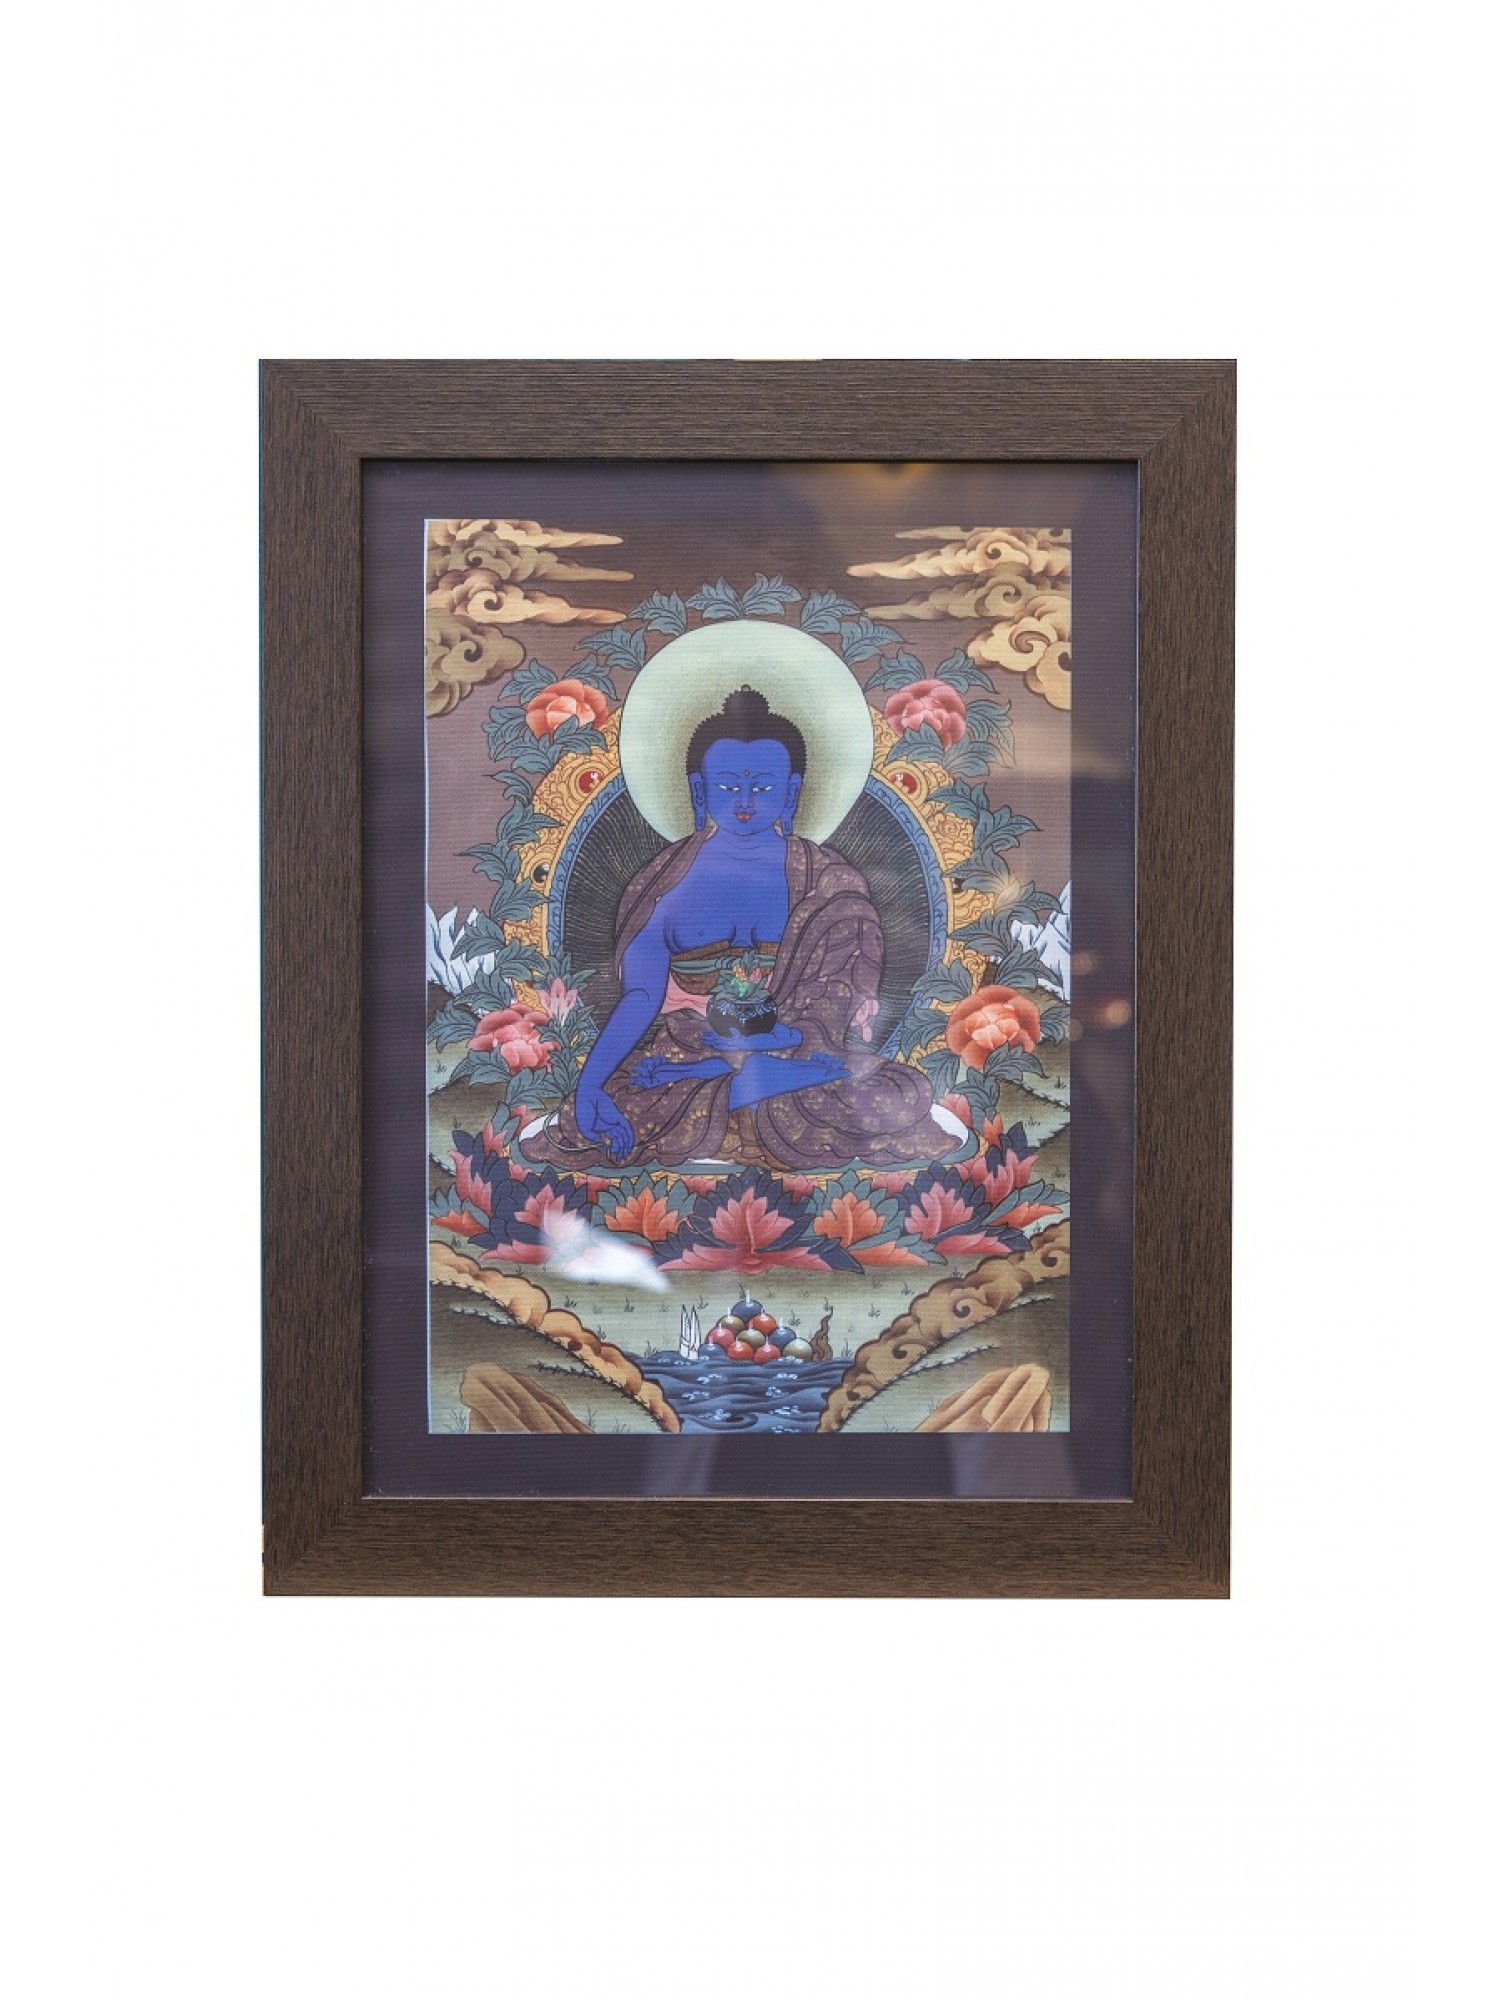 Картина "Будда Медицины" из Тибета  помогает преодолеть болезнь и страдания